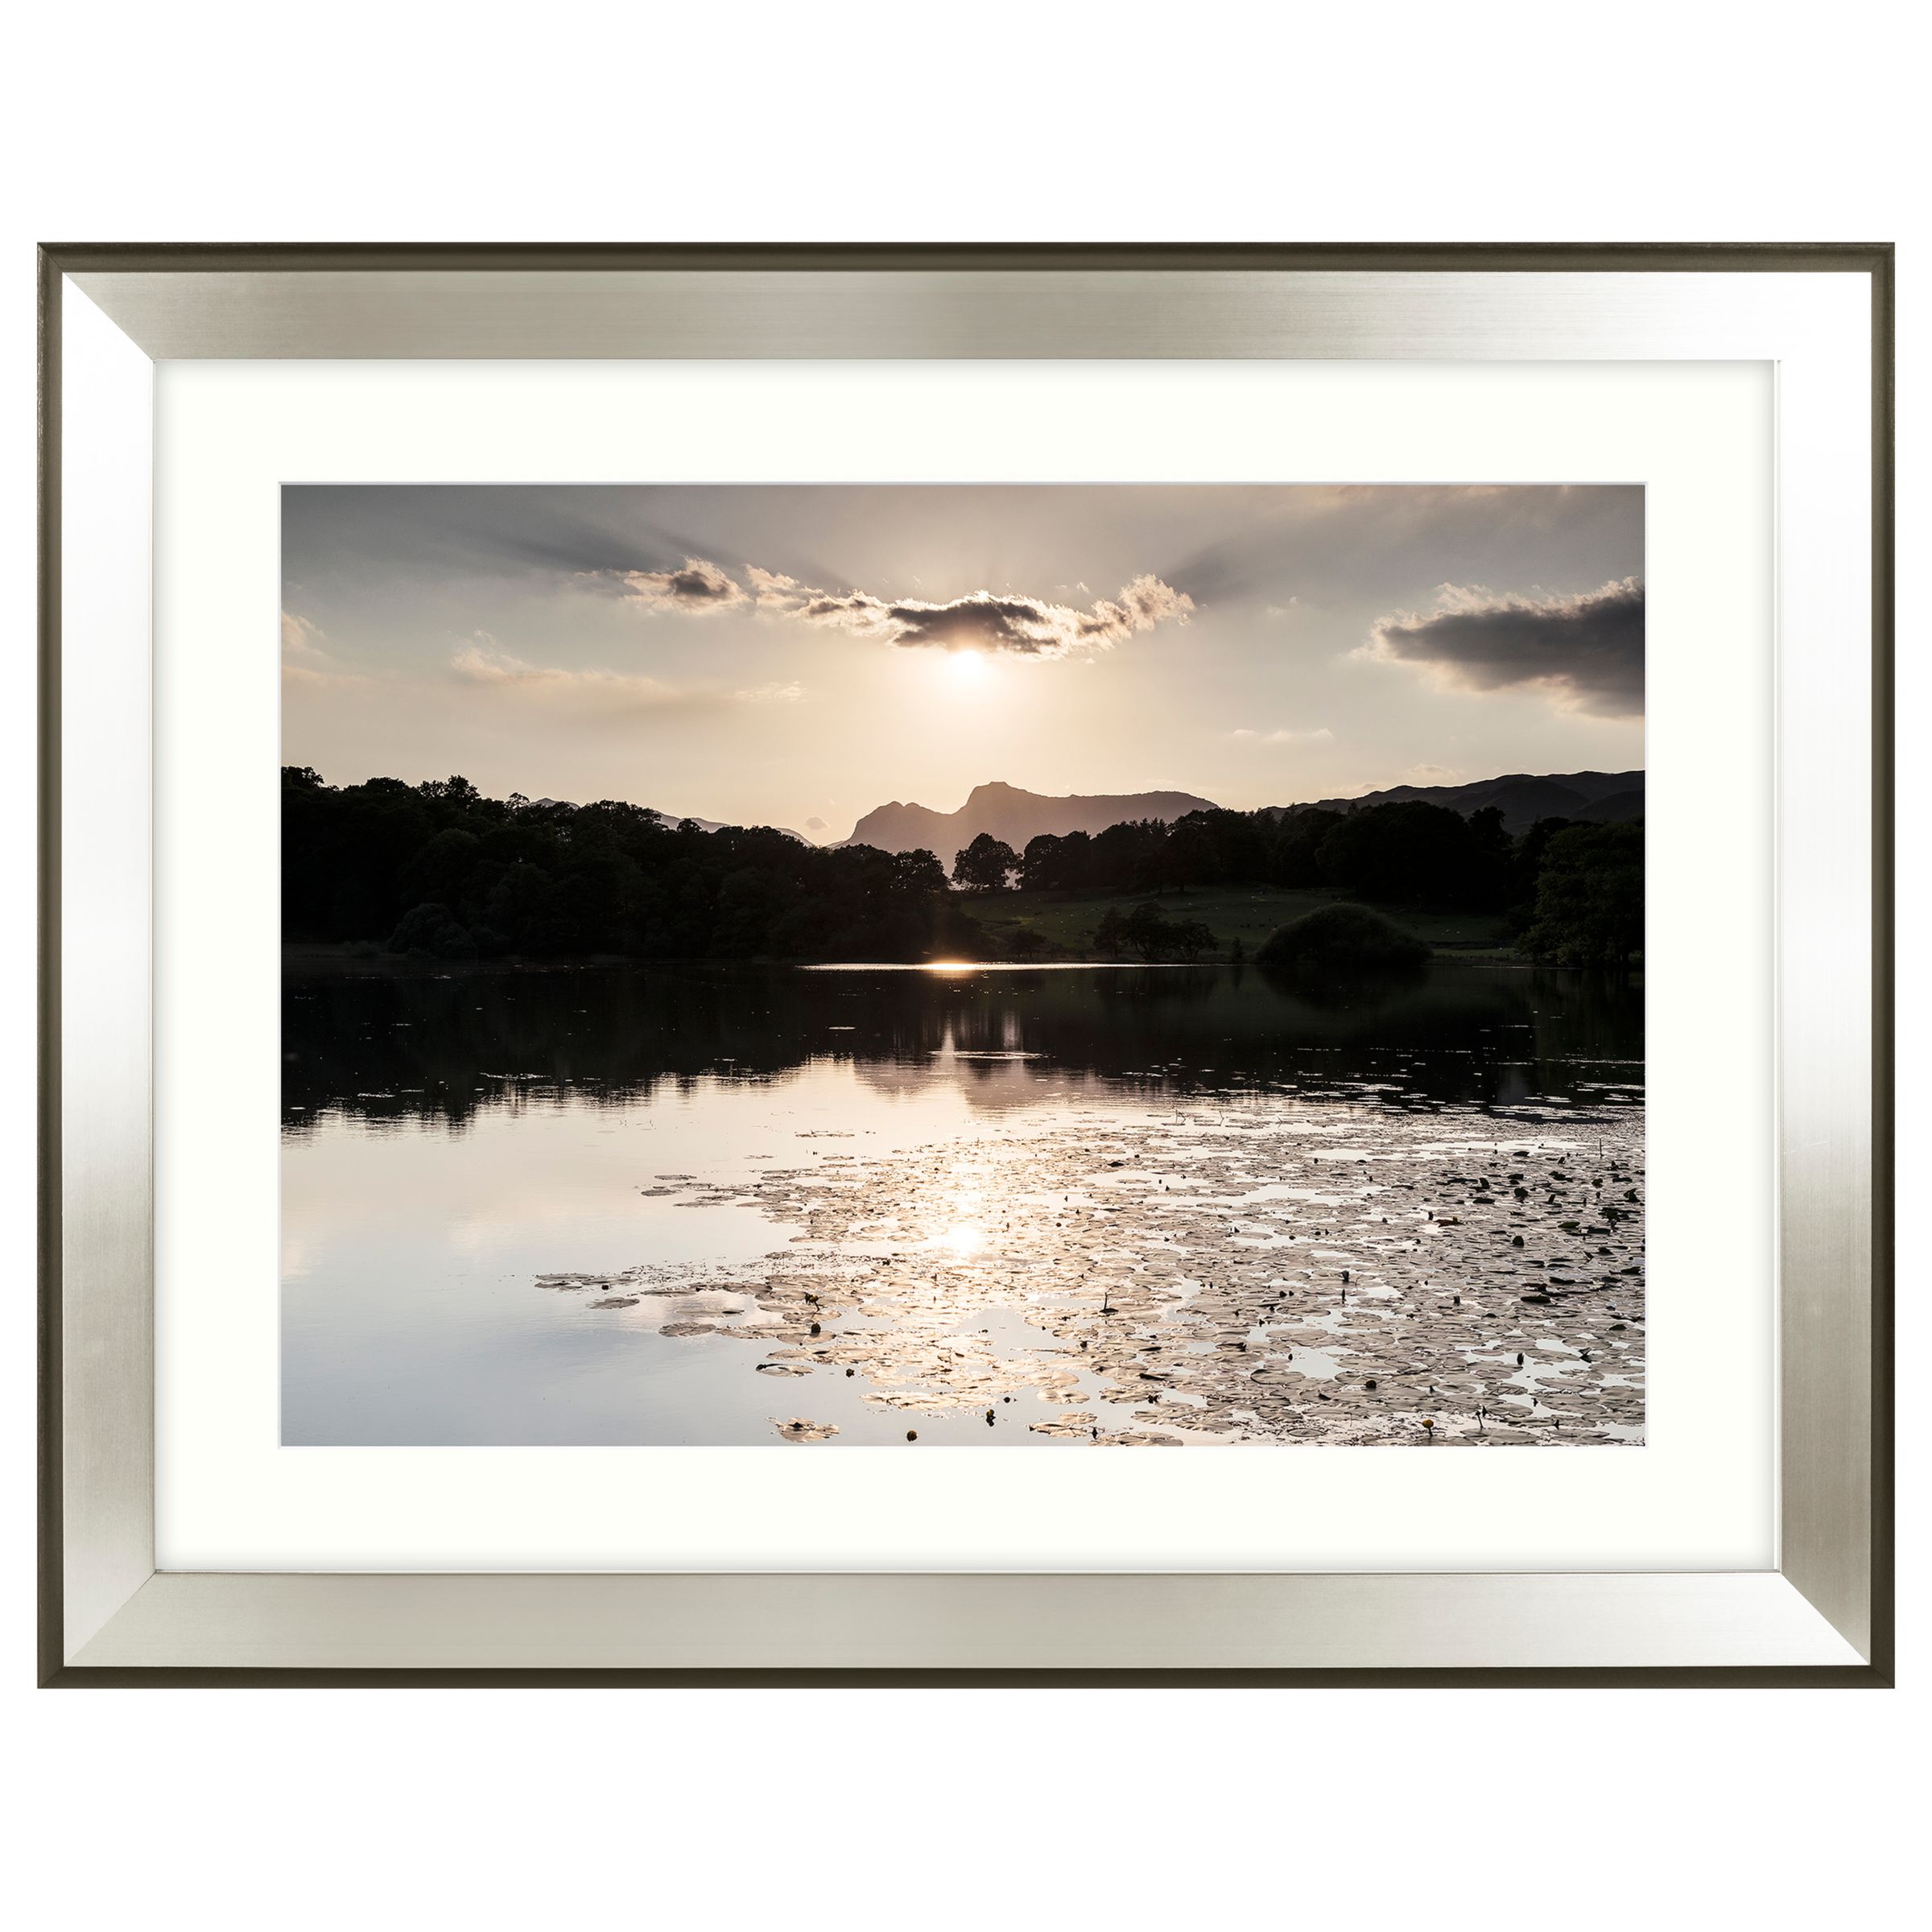 Buy Mike Shepherd - Glistening Waters Framed Print, 91 x 71cm | John Lewis